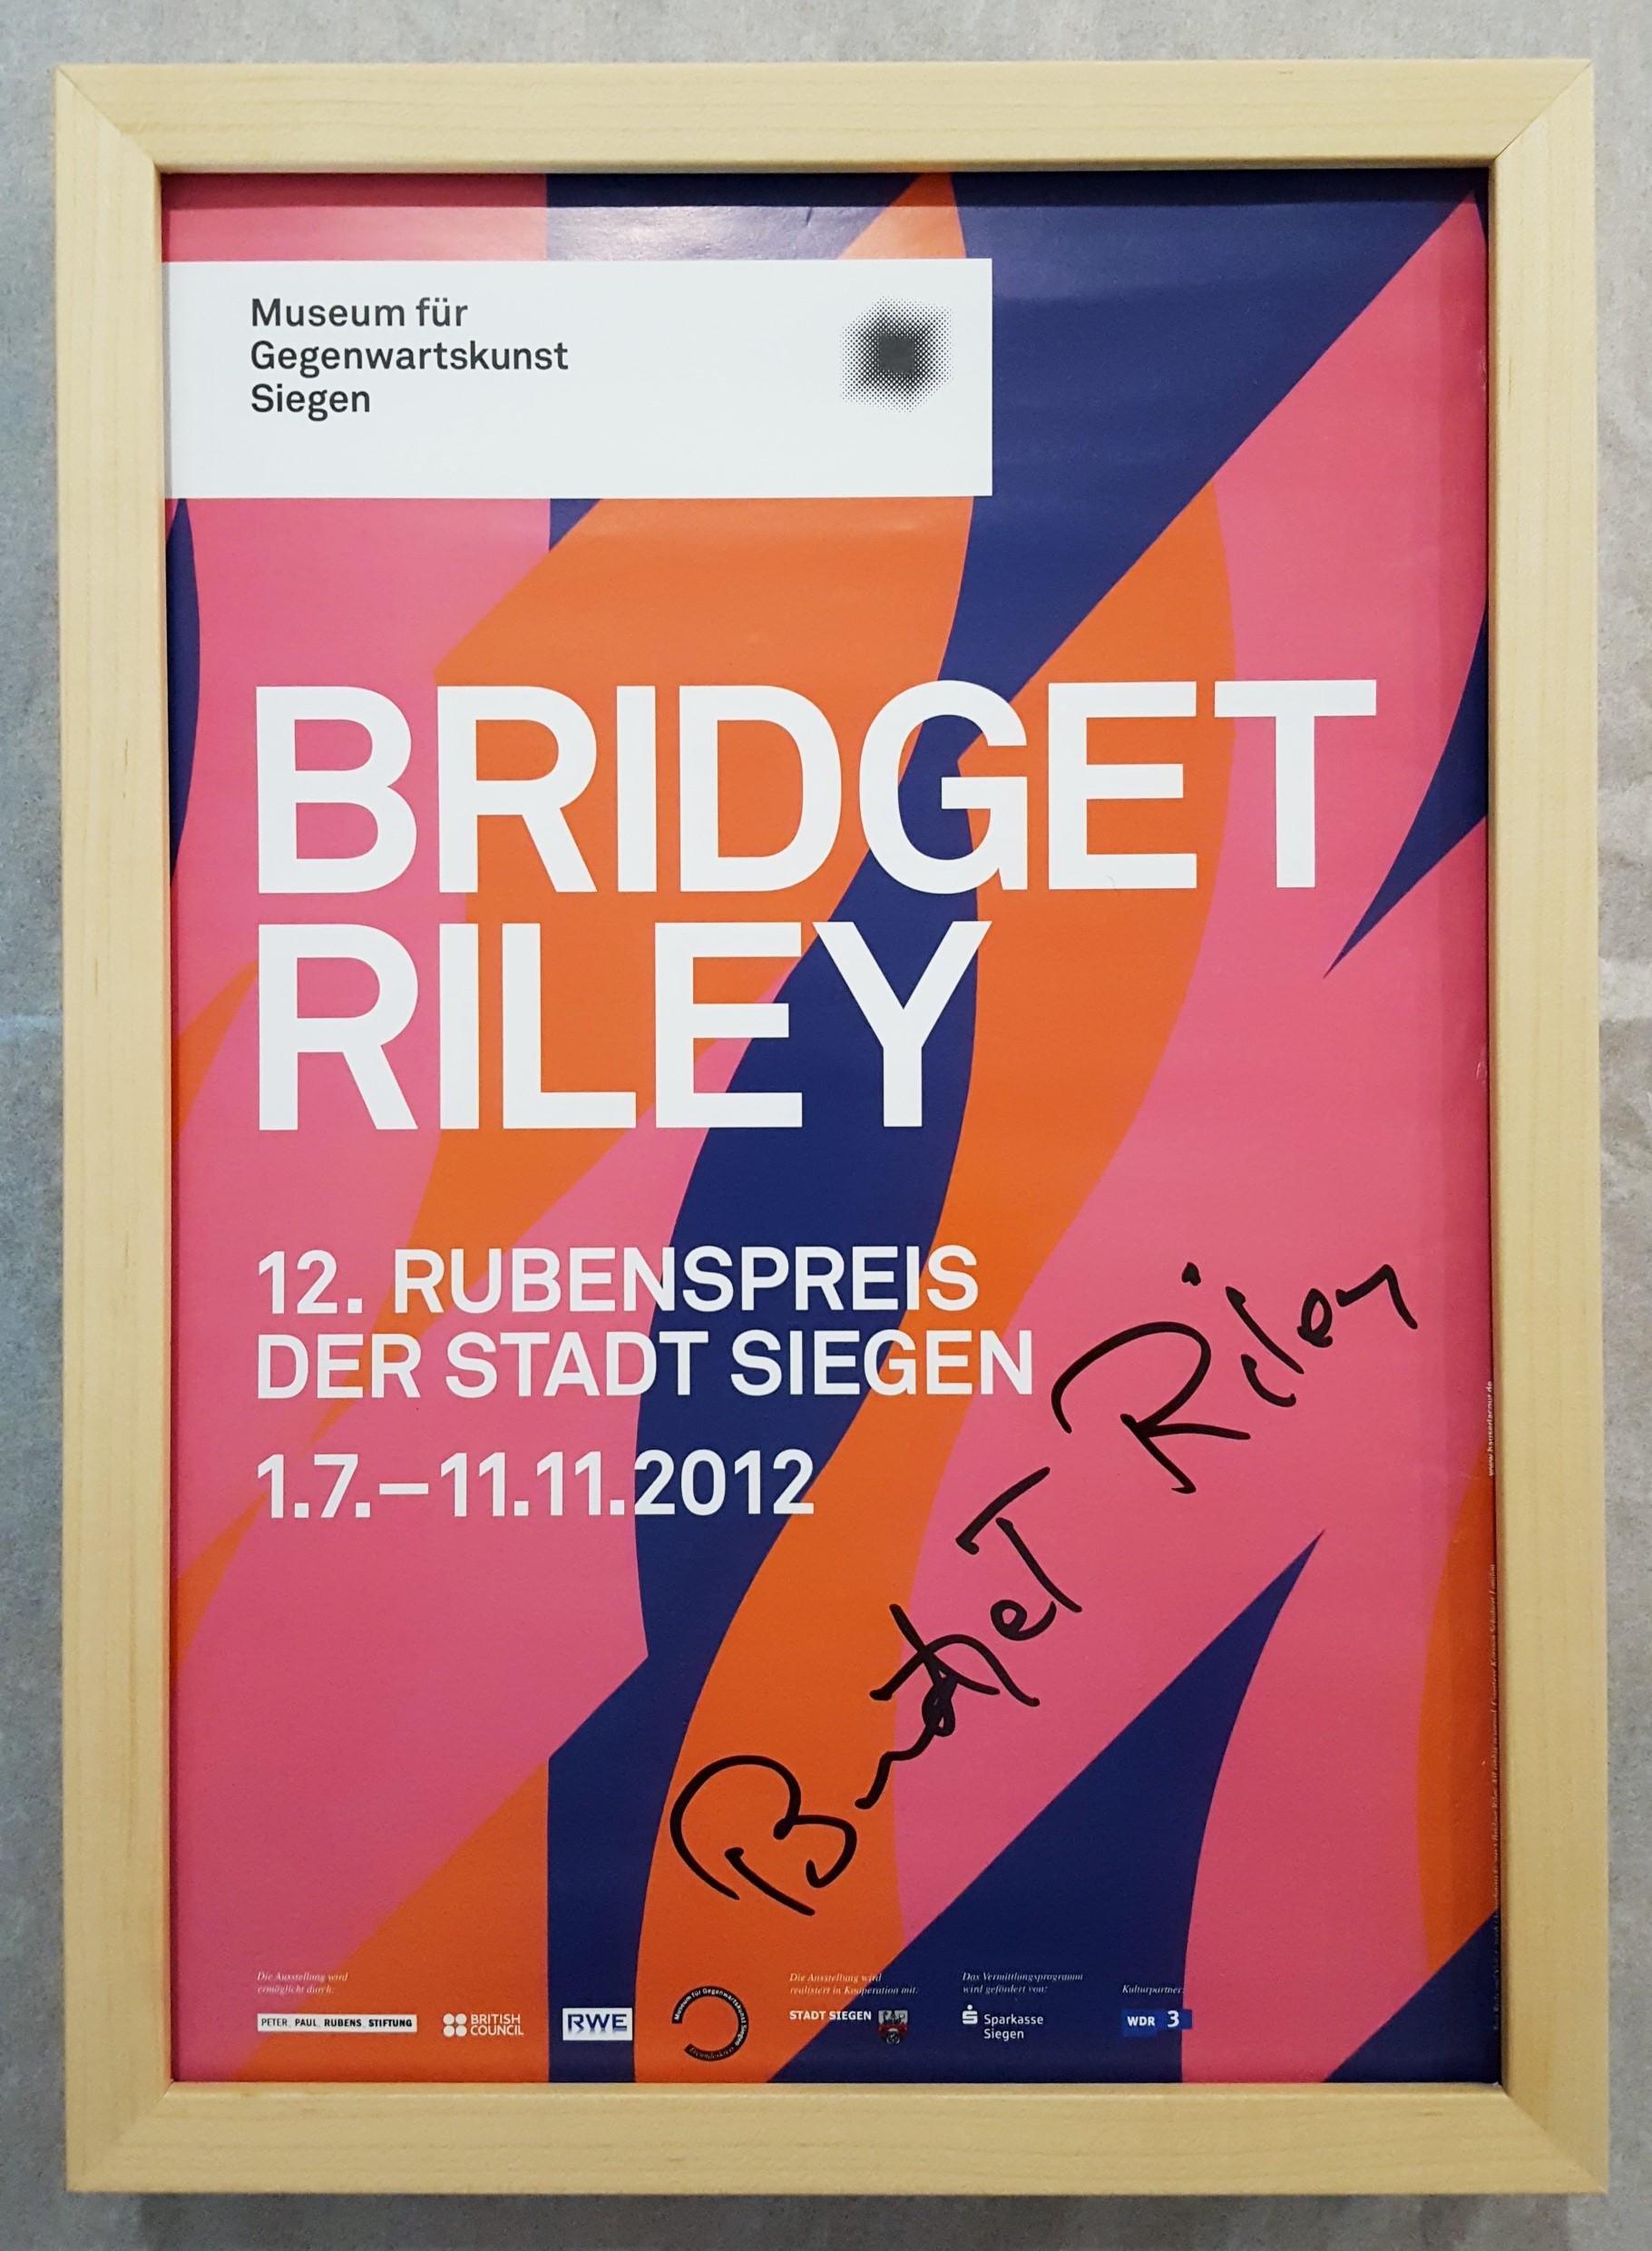 bridget riley exhibition poster